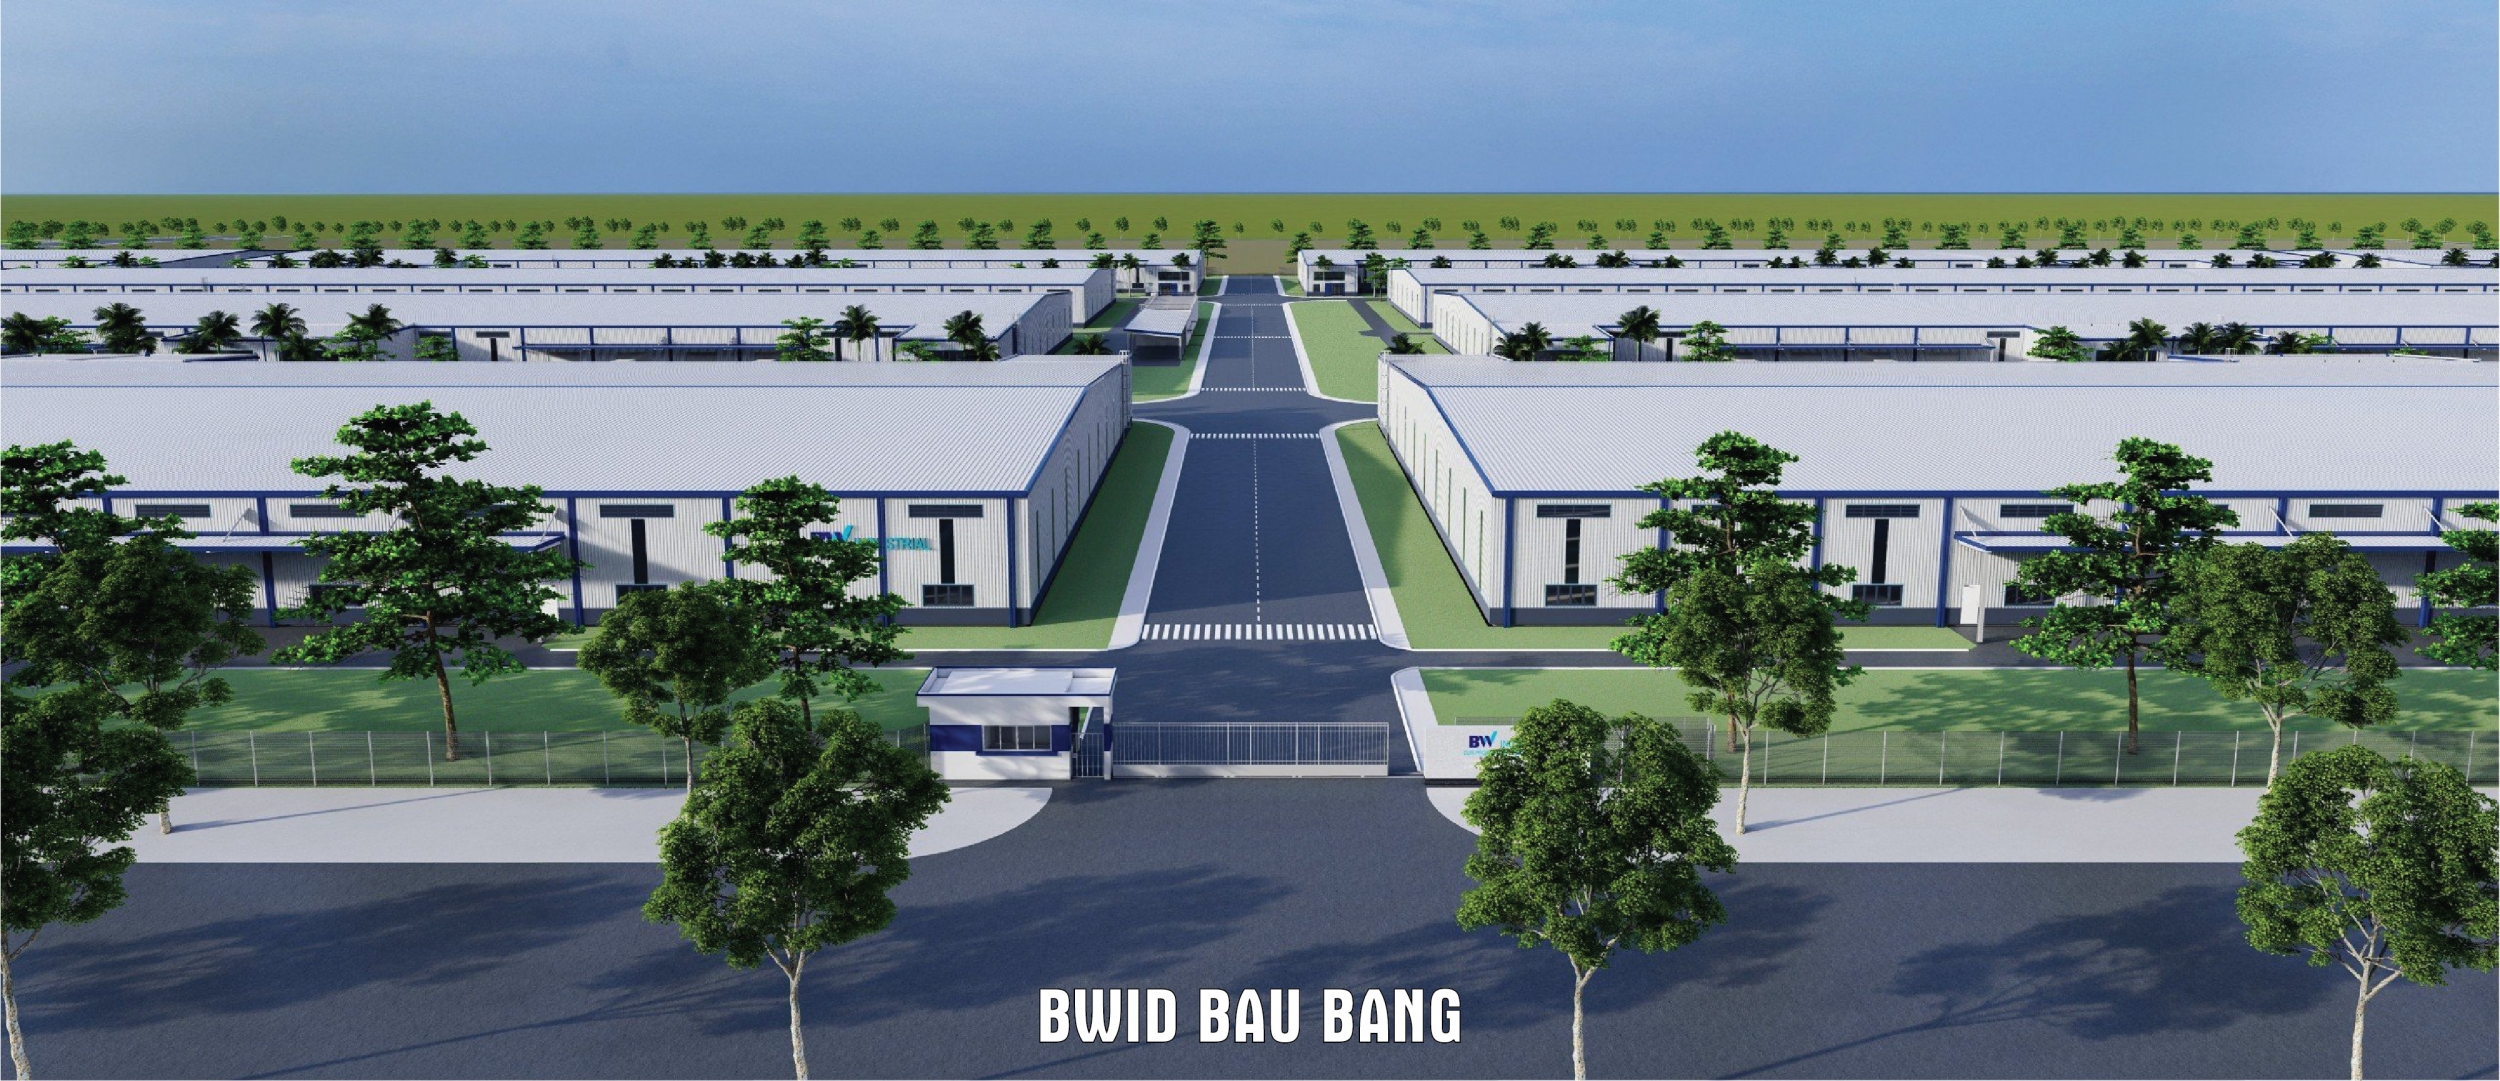 BWID BAU BANG